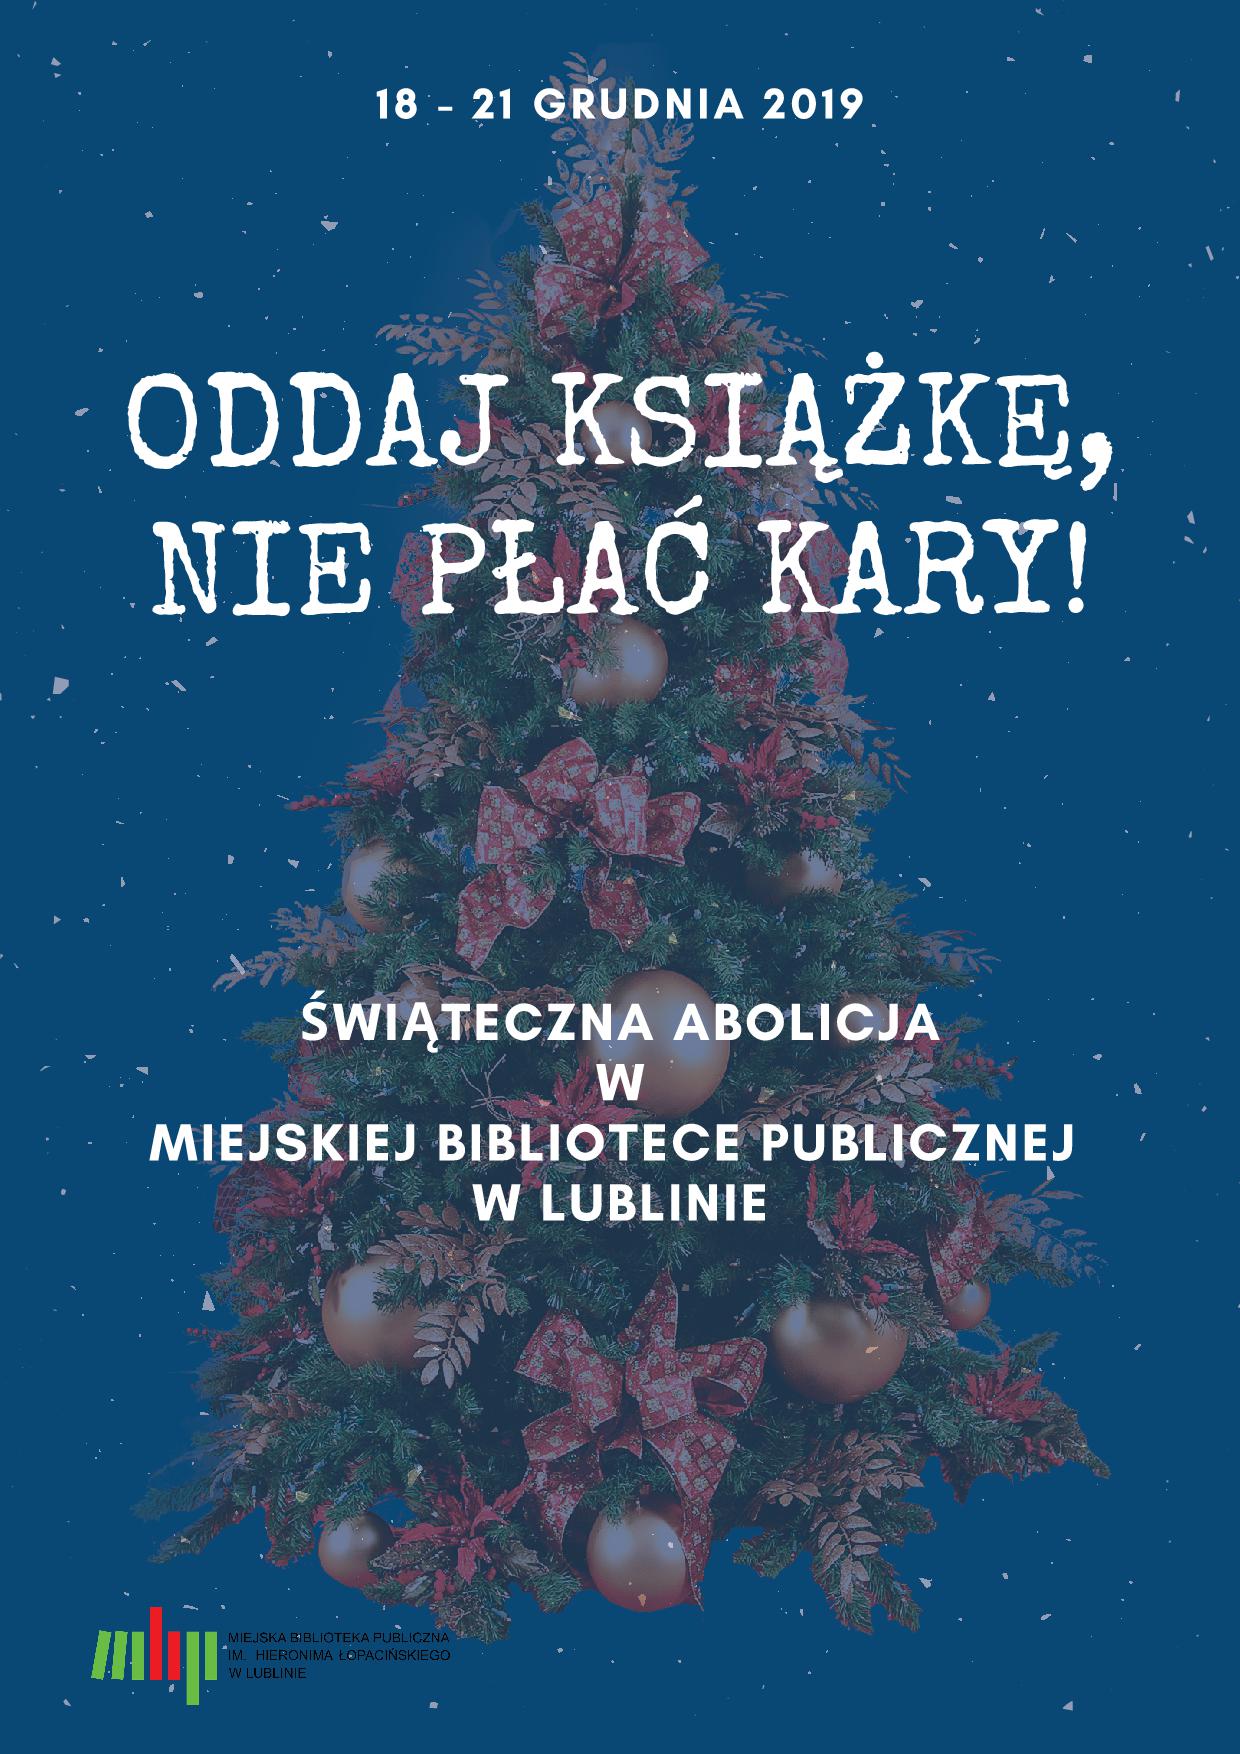 Abolicja w Miejskiej Bibliotece Publicznej w Lublinie!